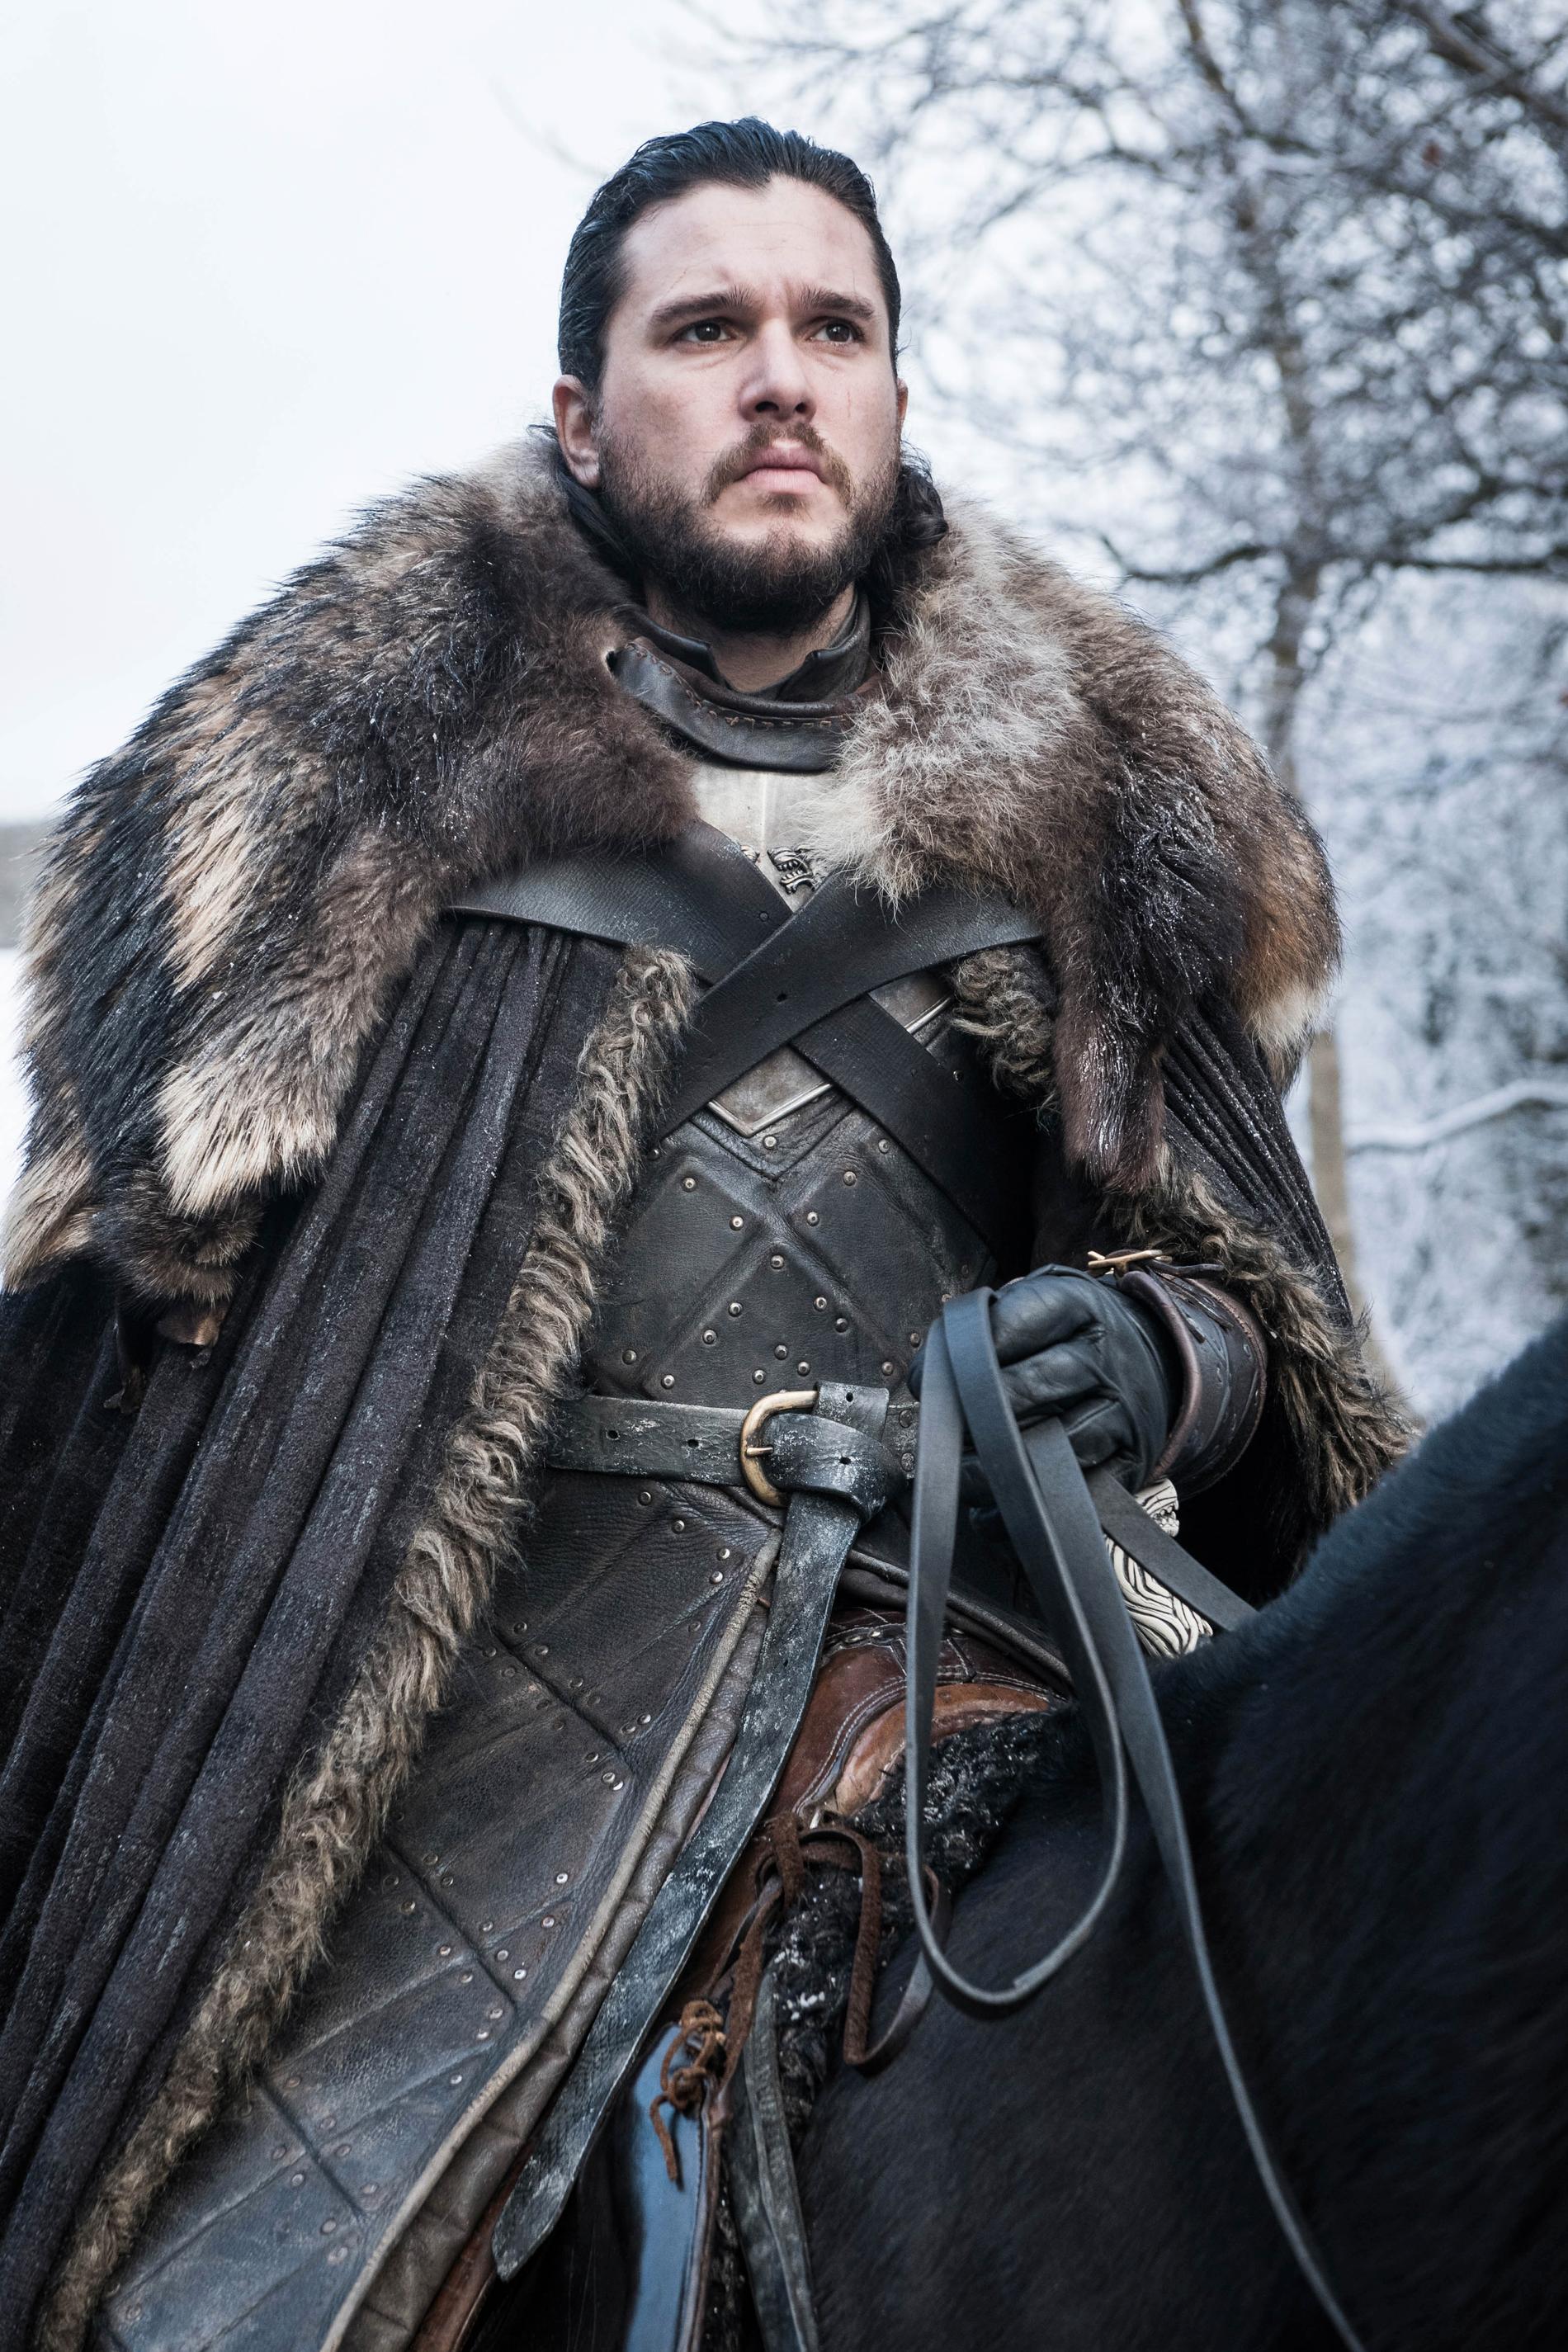 Jon Snows kläder påminner om det ”pappa” Ned Stark brukade bära.